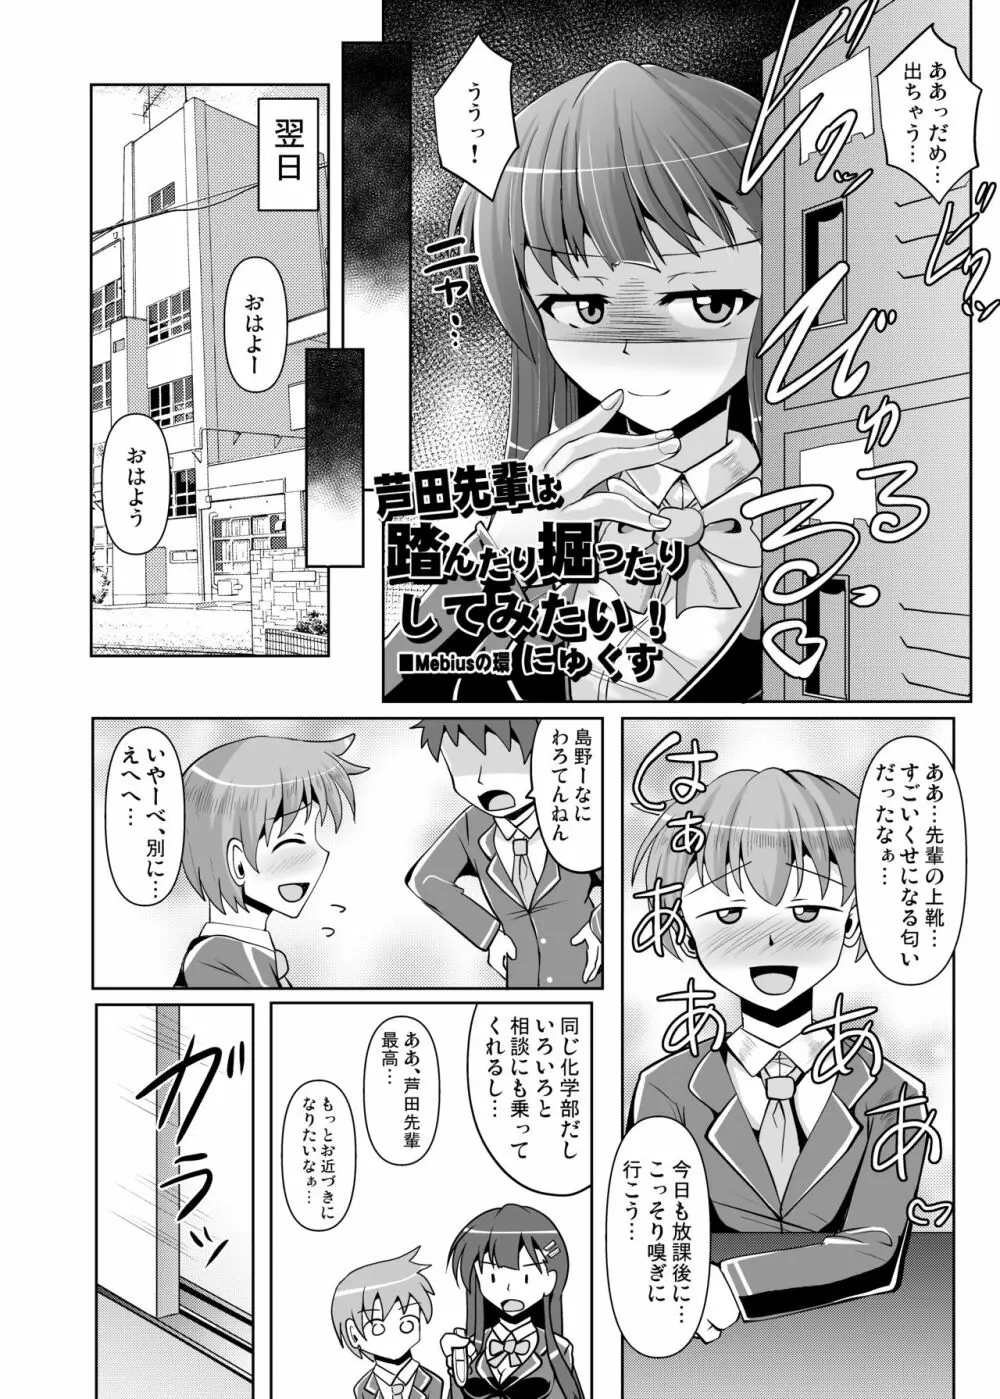 Mシチュマガジン Vol.1 2019年秋号 24ページ